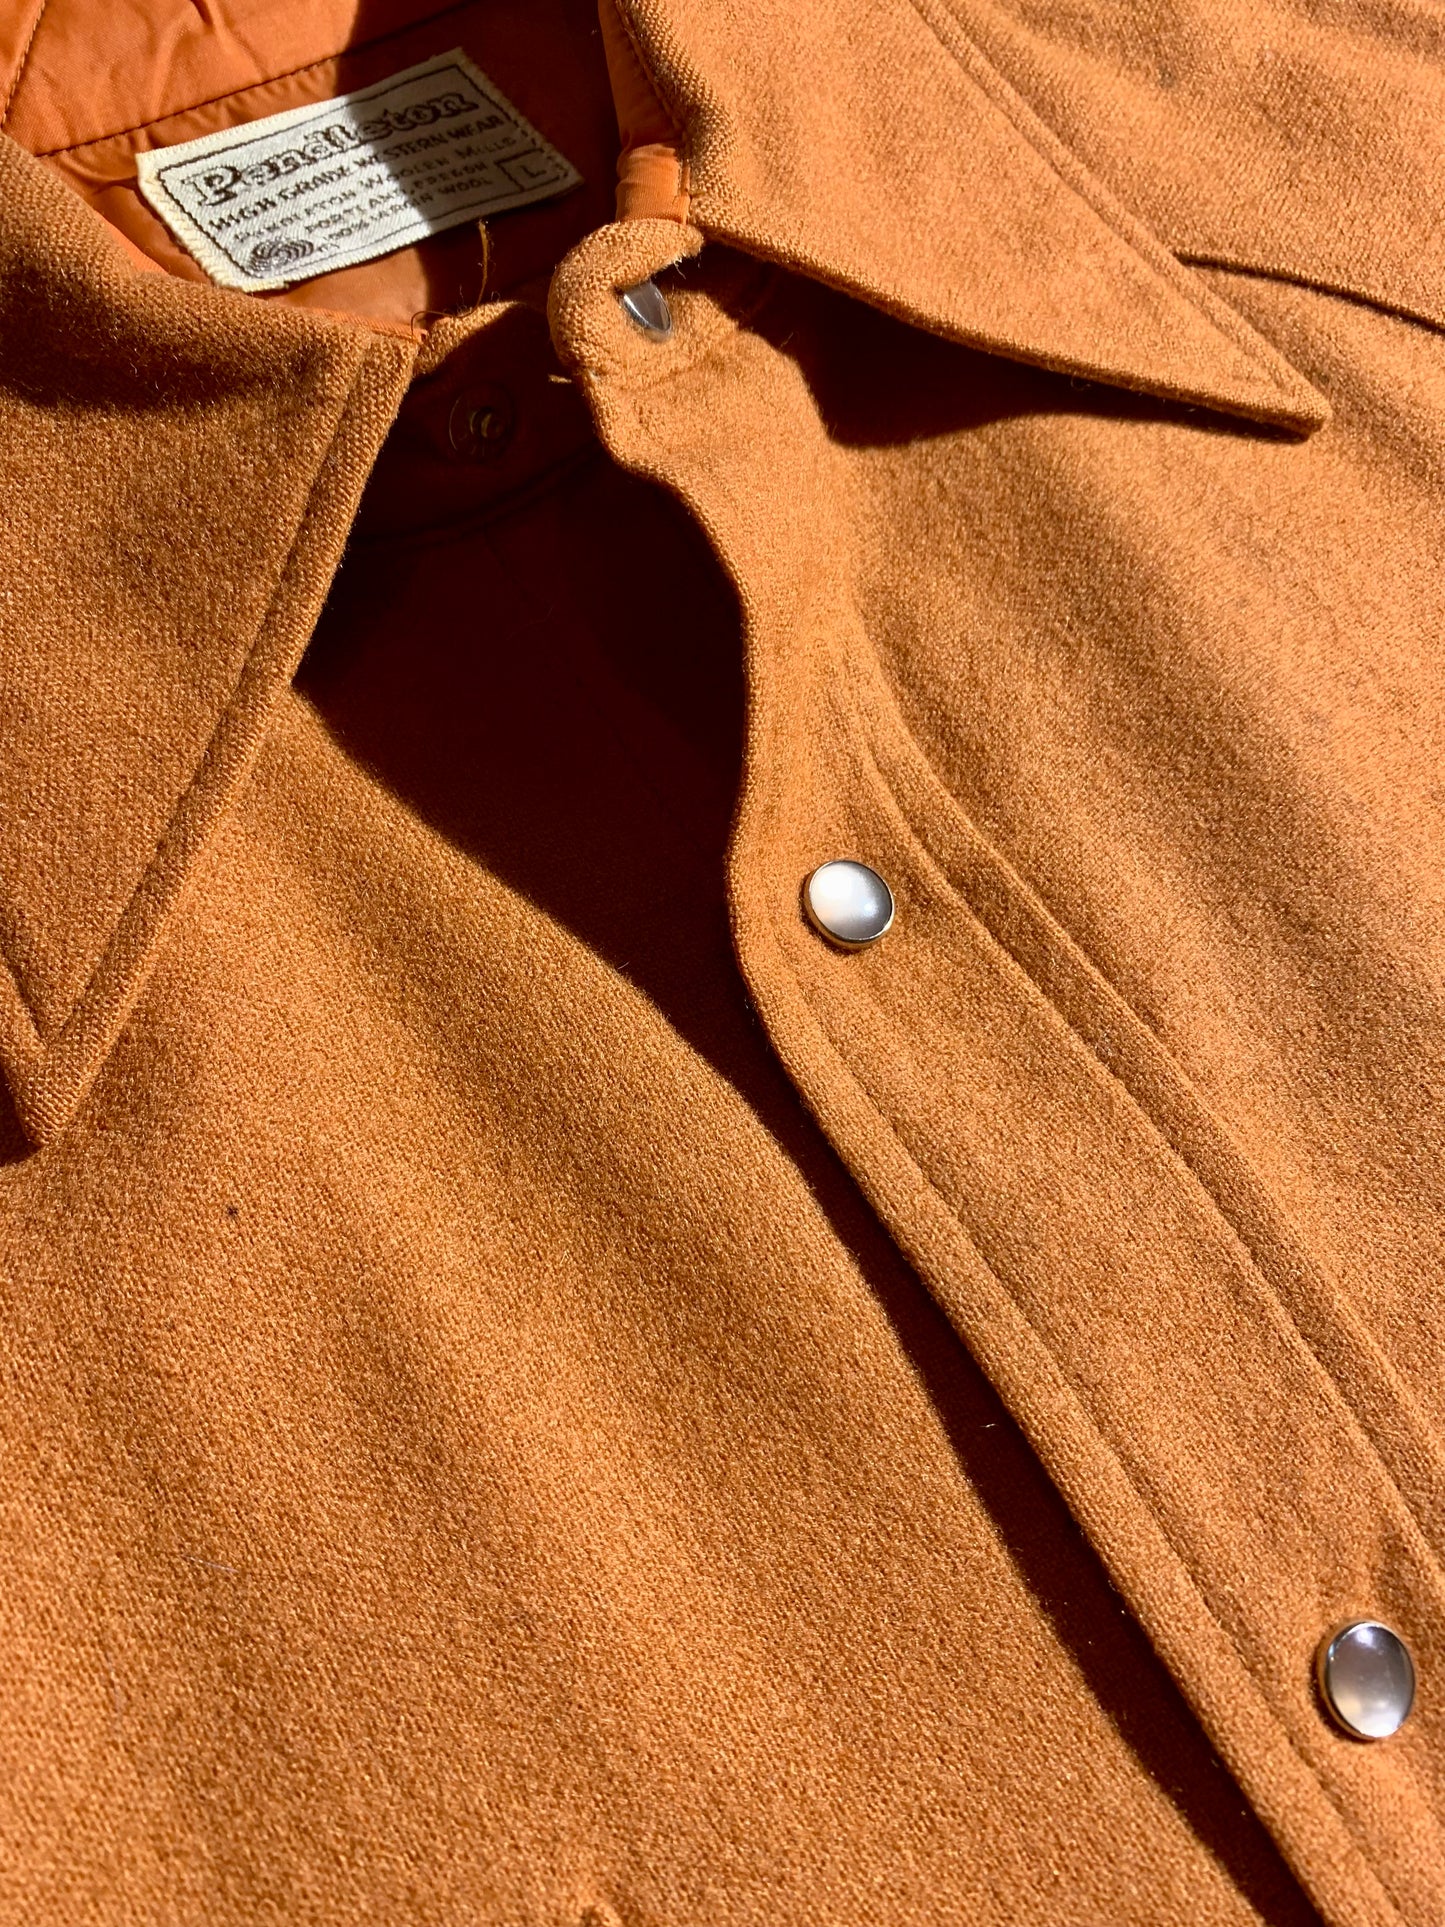 Vintage Pendleton Wool Western Shirt